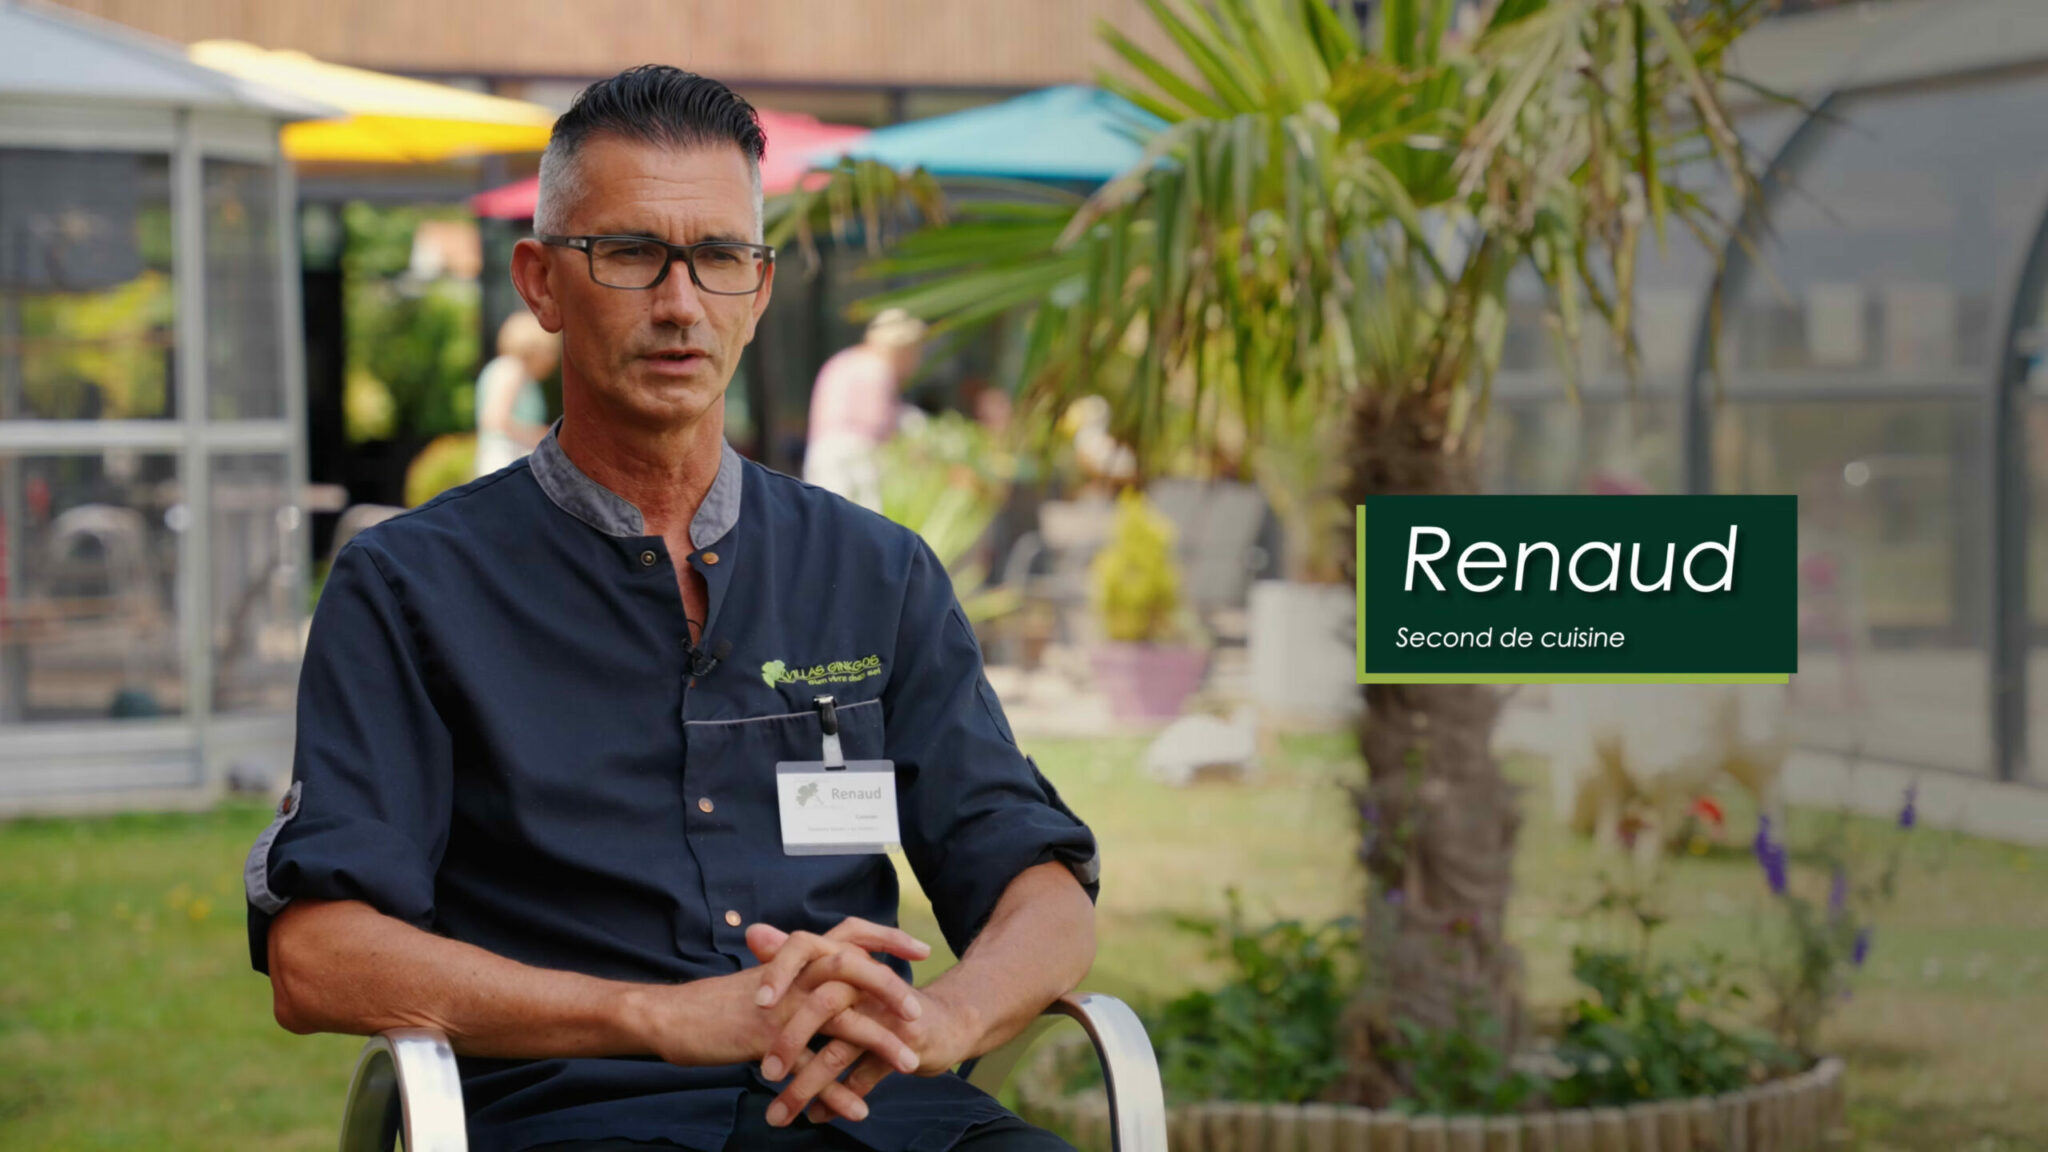 Témoignage de Renaud, Second de cuisine Villas Ginkgos Résidences Seniors